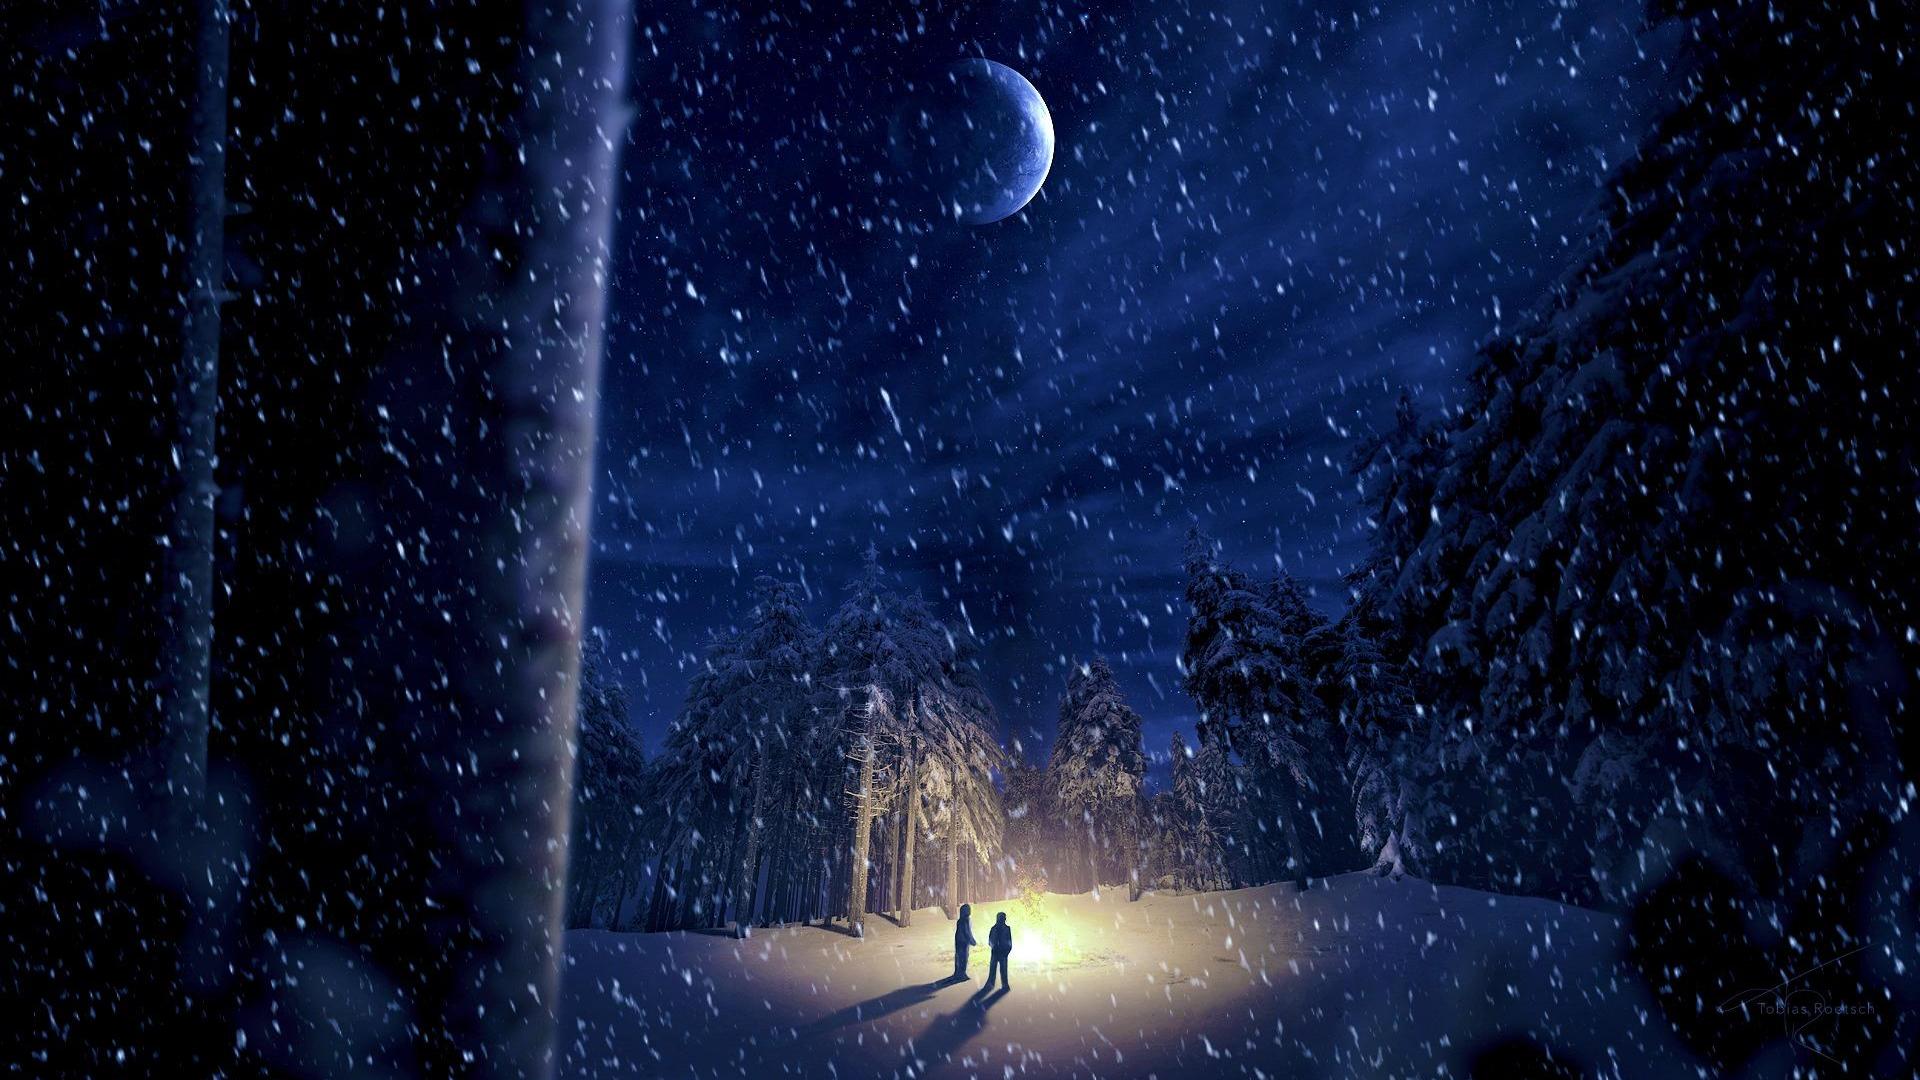 Winter Night In Moonlight Wallpaper For PC Wallpaper